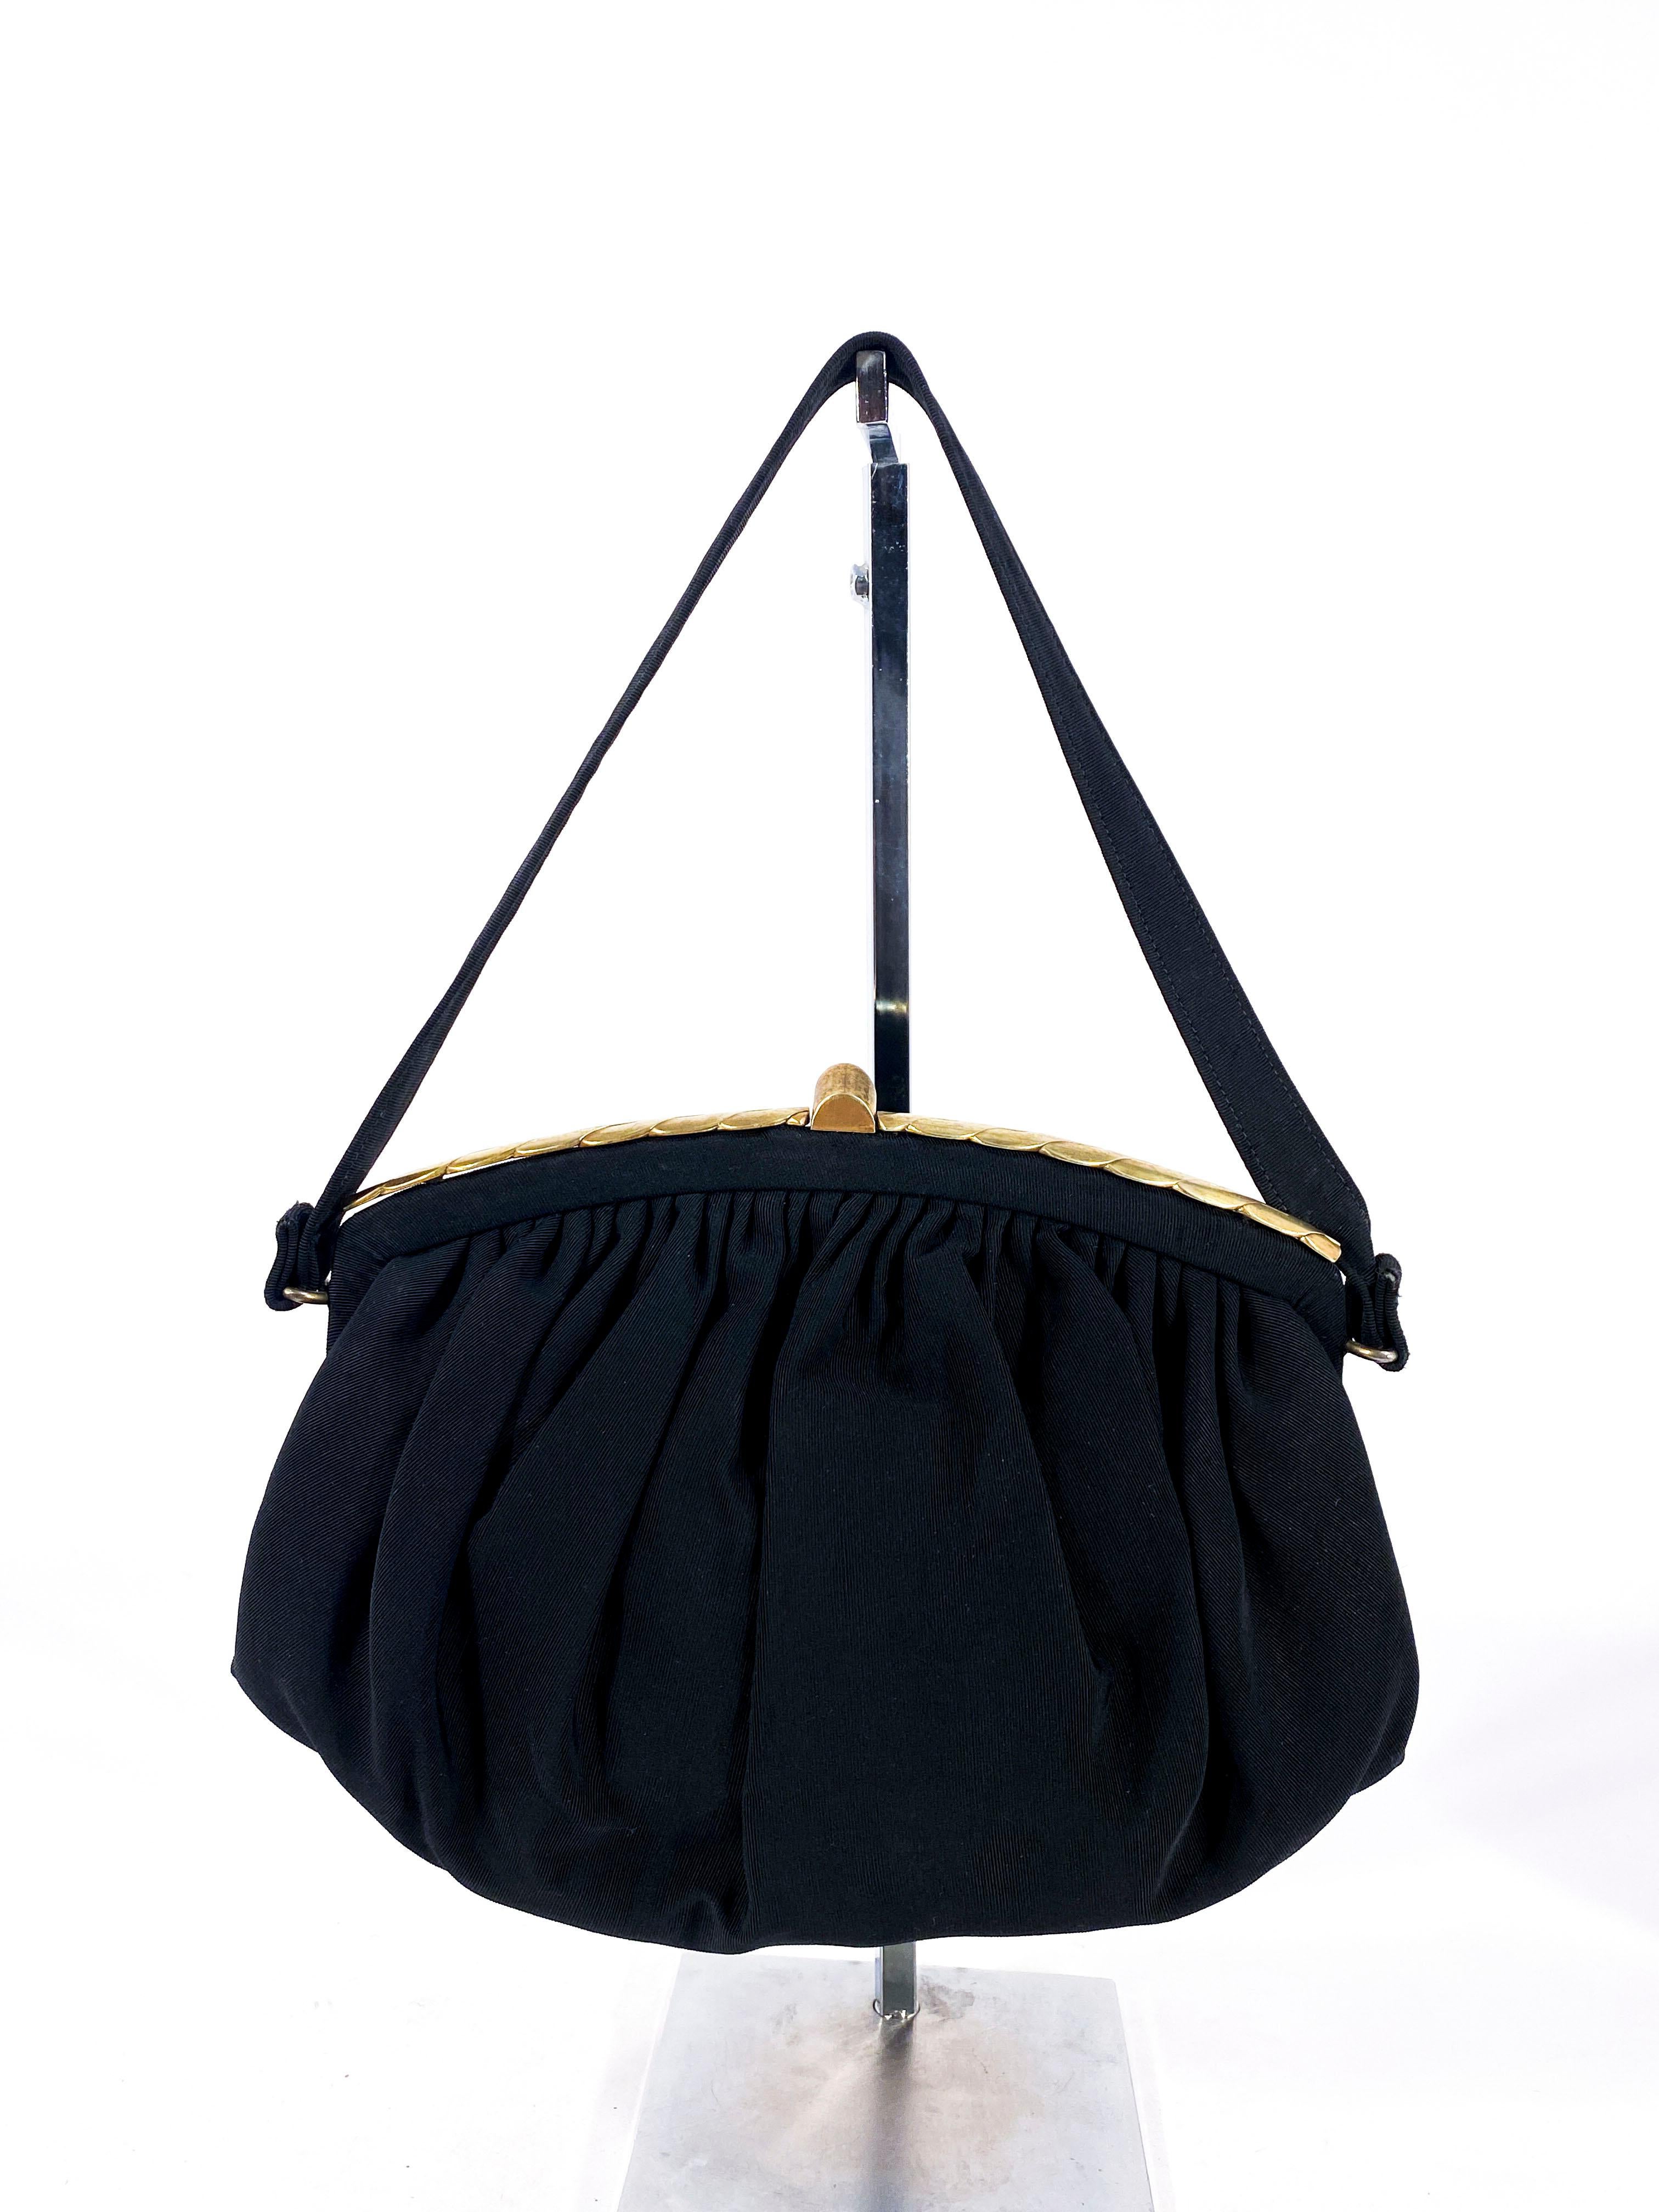 1940er Jahre Schwarze Handtasche aus Twill mit dekorativem Messingverschluss, geraffter Körper mit dekorativem Rahmen. Das Innere des Portemonnaies besteht aus einem schwarzen Futter mit mehreren Fächern, von denen eines mit einem Reißverschluss